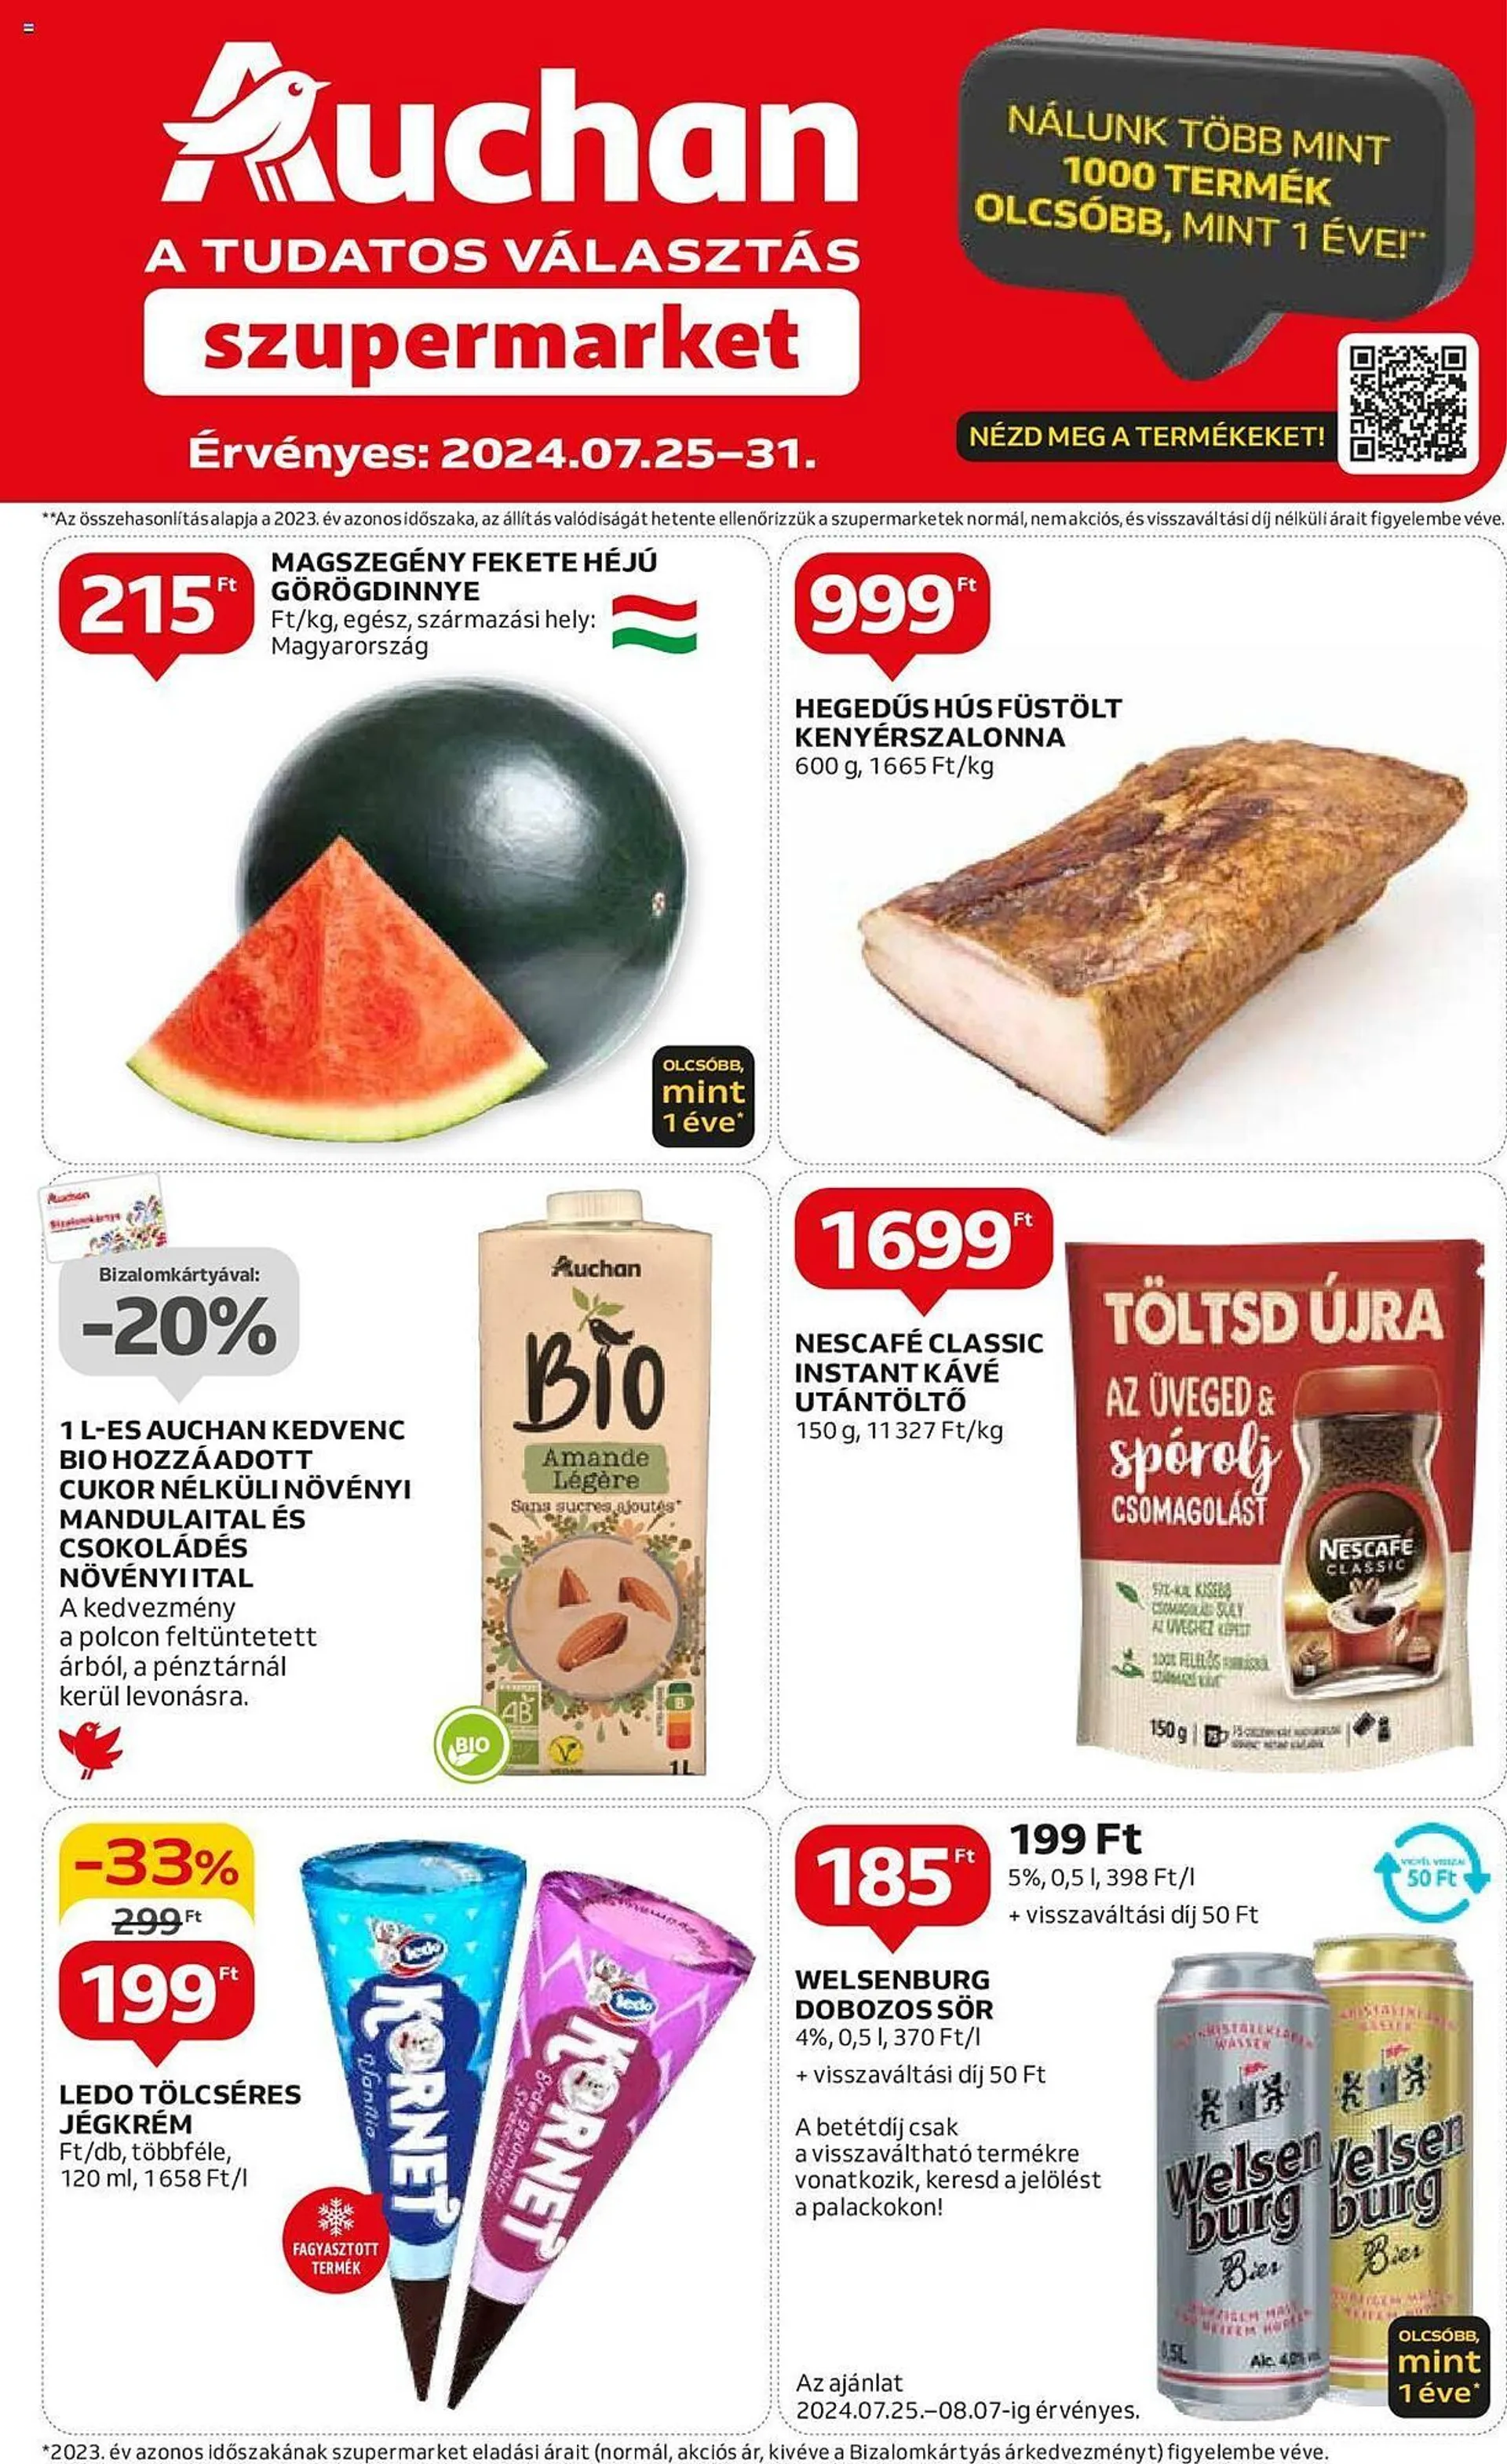 Auchan Szupermarket akciós újság - 1